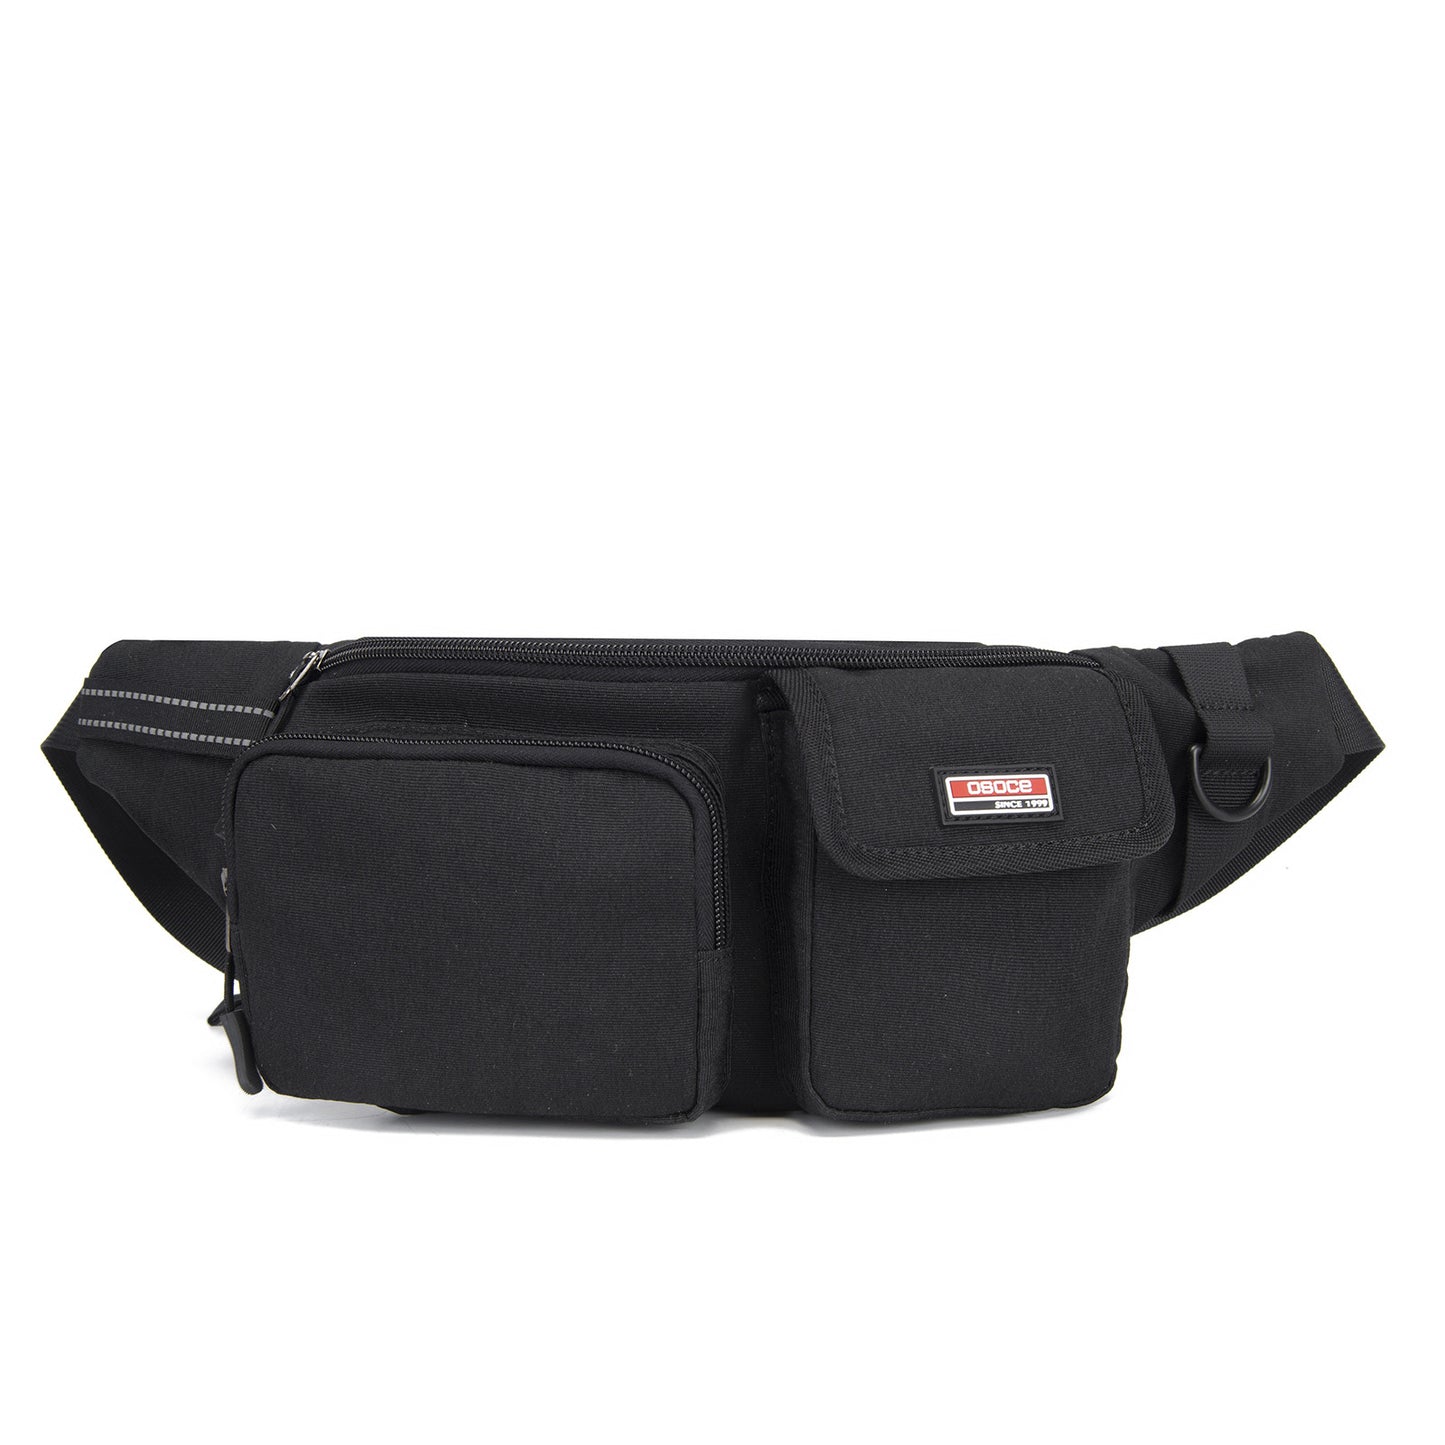 OSOCE B55 Waist Belt Bag